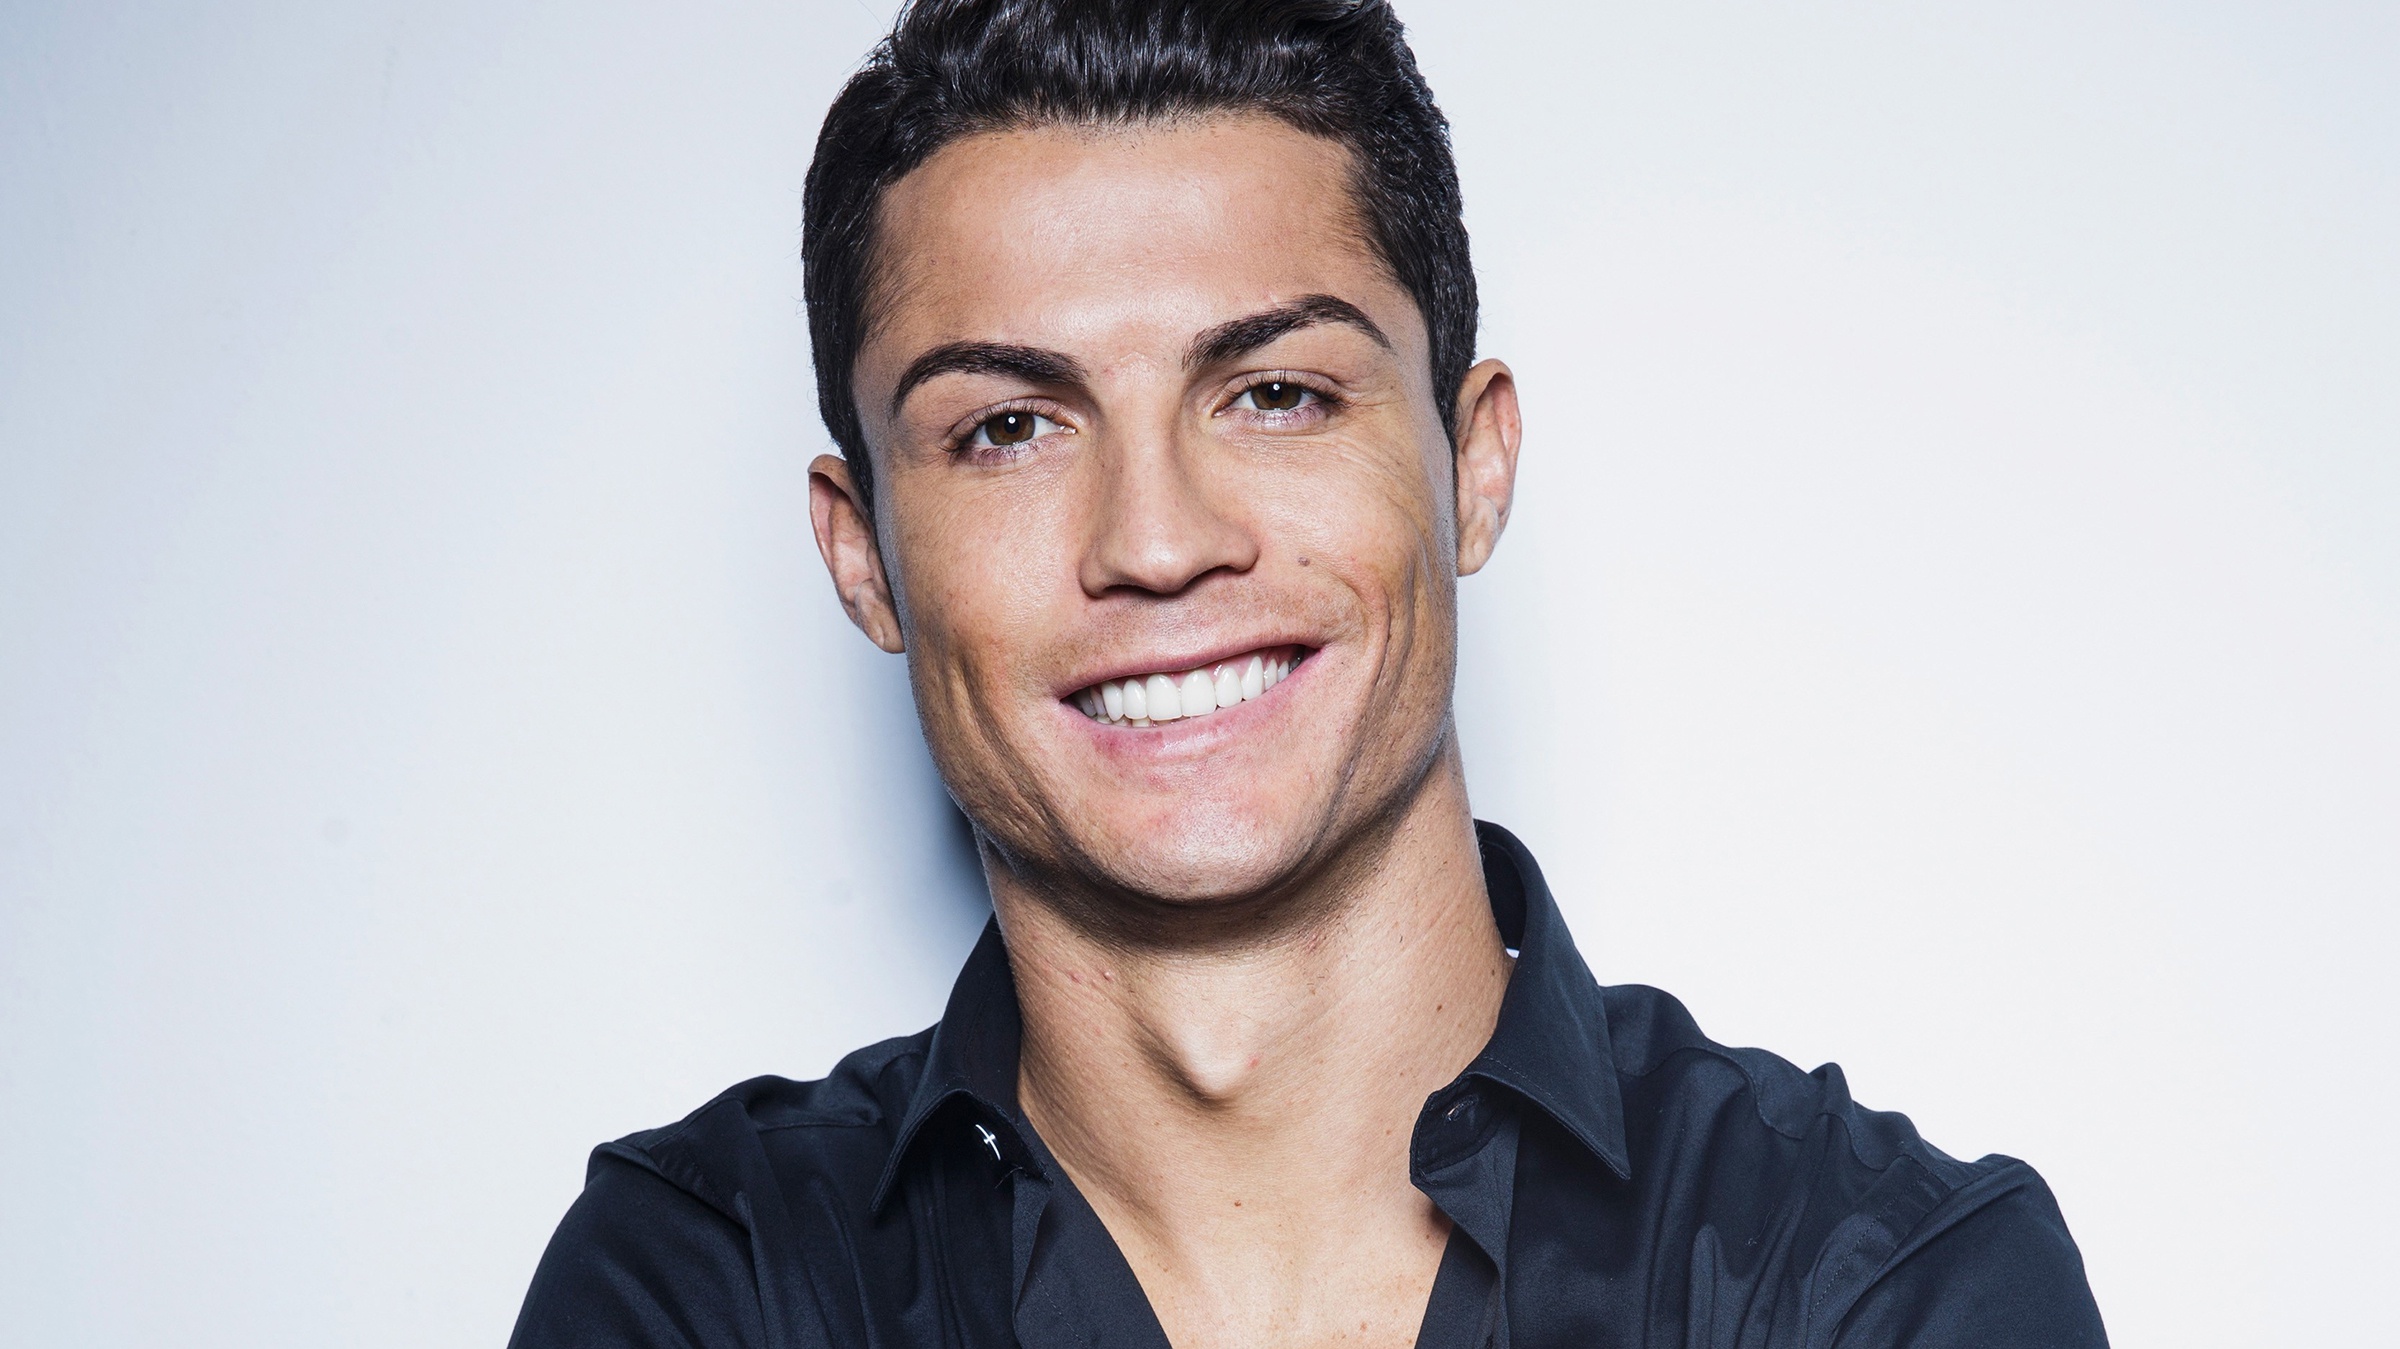 Wallpaper Of Cristiano Ronaldo, Portuguese, Smile Background - Cristiano Ronaldo Hd Wallpaper Smile - HD Wallpaper 